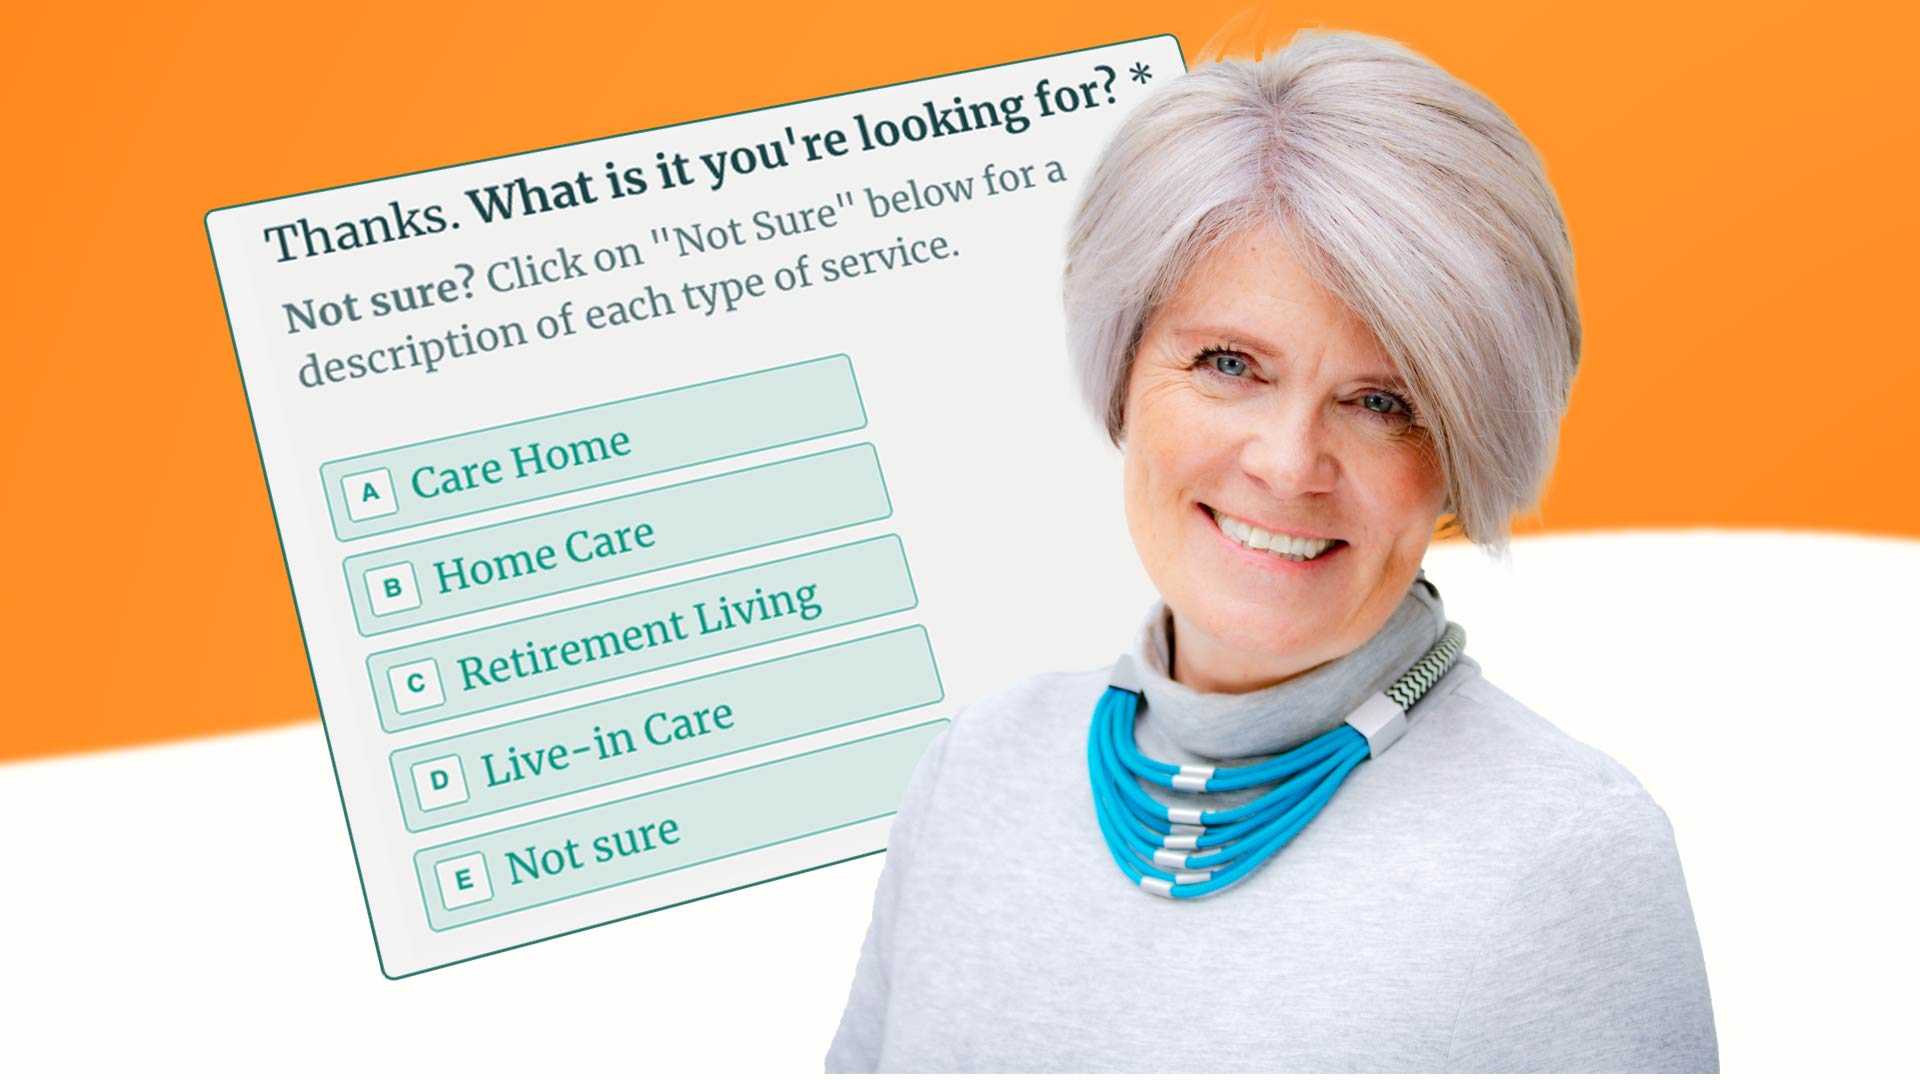 Autumna's elder care shortlisting questionnaire